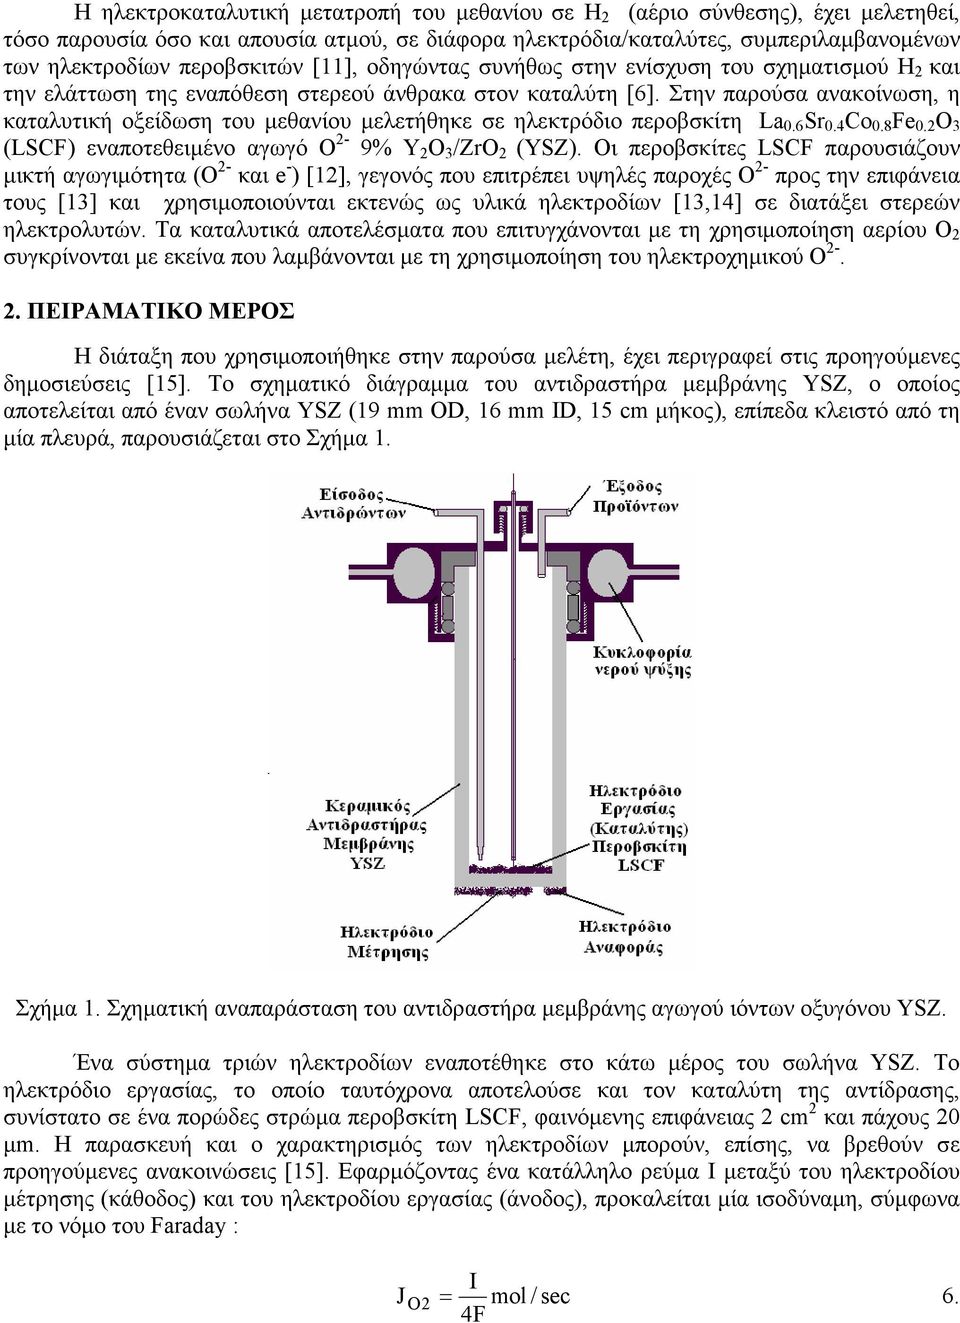 Στην παρούσα ανακοίνωση, η καταλυτική οξείδωση του μεθανίου μελετήθηκε σε ηλεκτρόδιο περοβσκίτη La.6 Sr.4 Co.8 Fe. 3 (LSCF) εναποτεθειμένο αγωγό Ο - 9% Y 3 /Zr (YSZ).